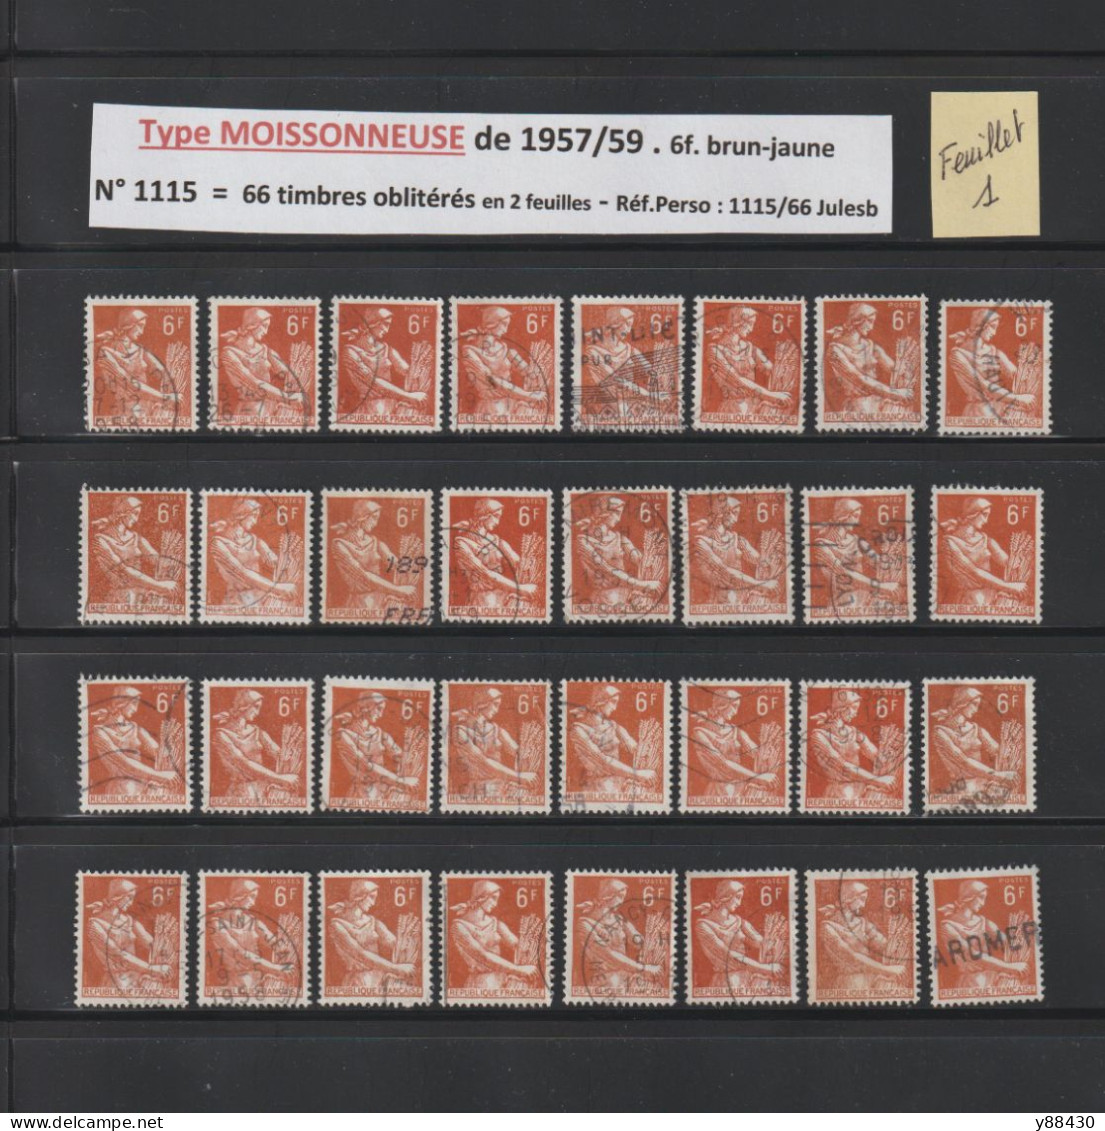 1115 De 1957/1959  - 66 Timbres Oblitérations Diverses - Type MOISSONNEUSE - 6f. Brun-jaune - 6 Scan - 1957-1959 Mäherin